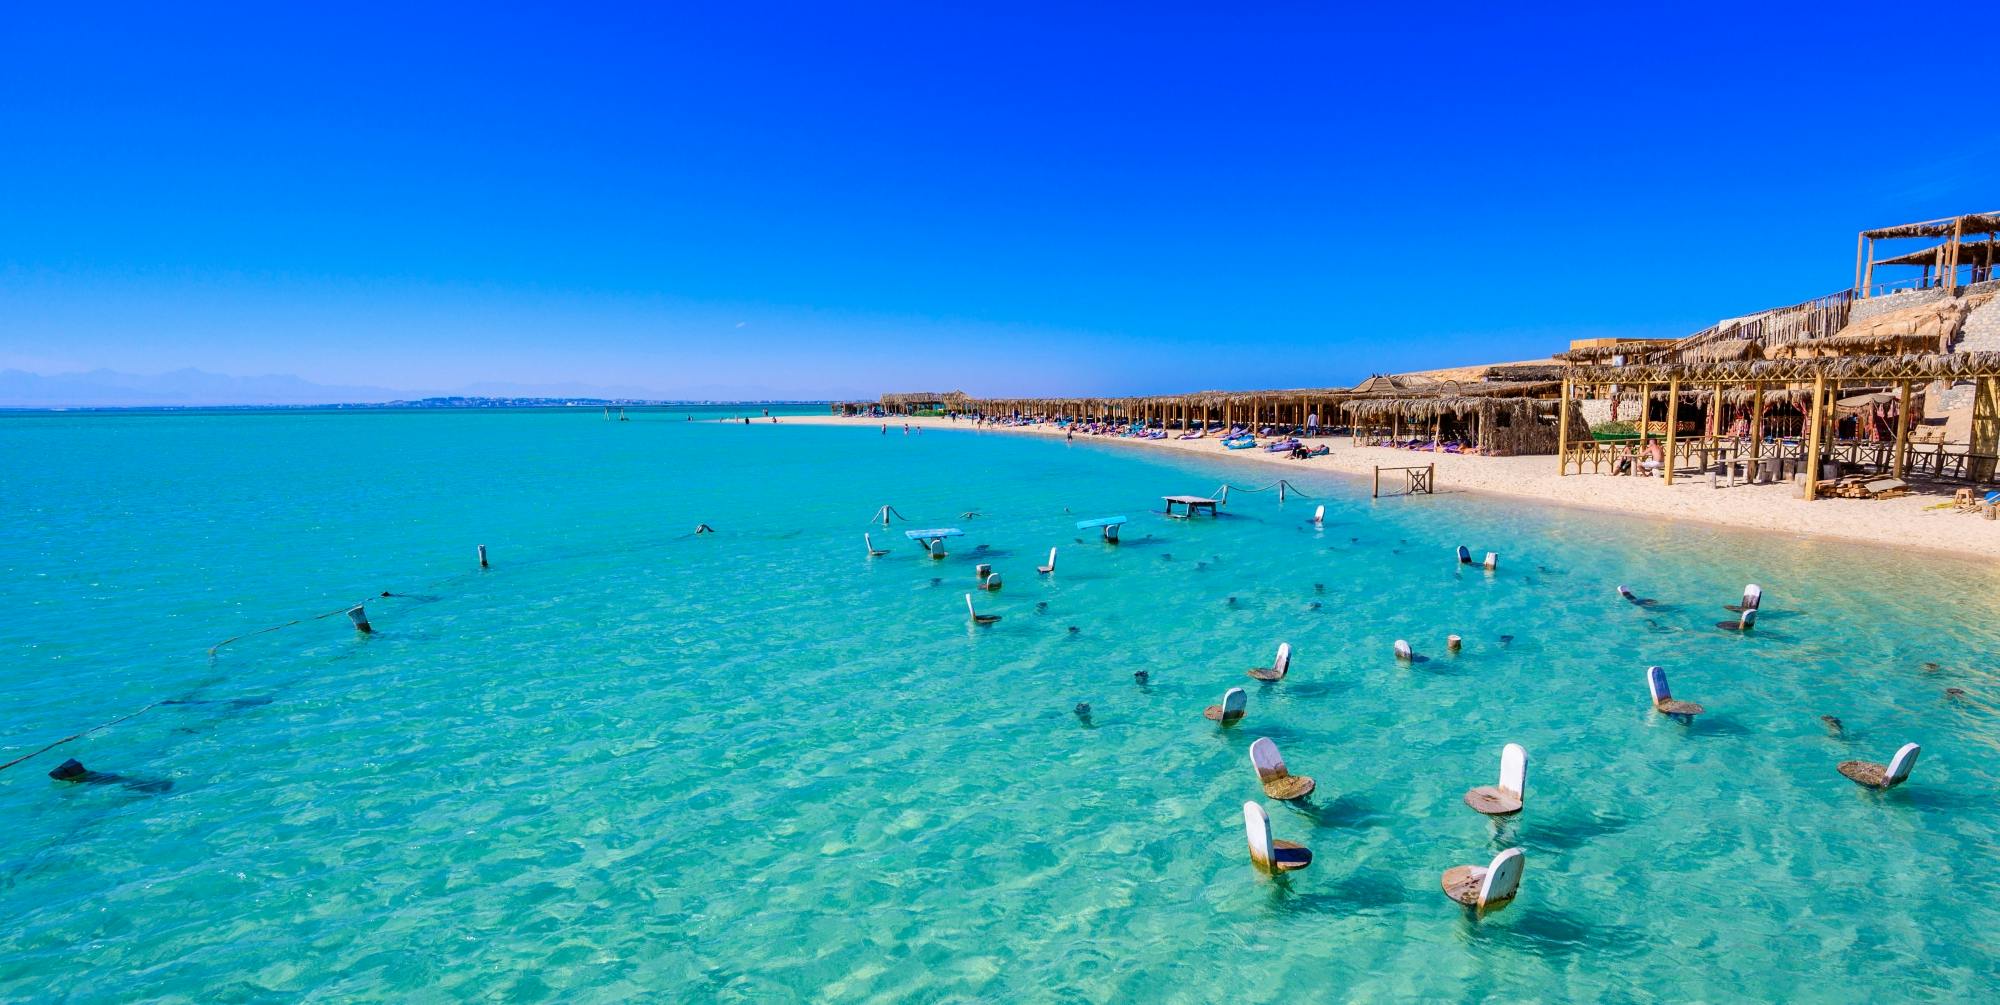 Mahmya Giftun Island – heldagscruise med snorkling og strandbesøk i Hurghada